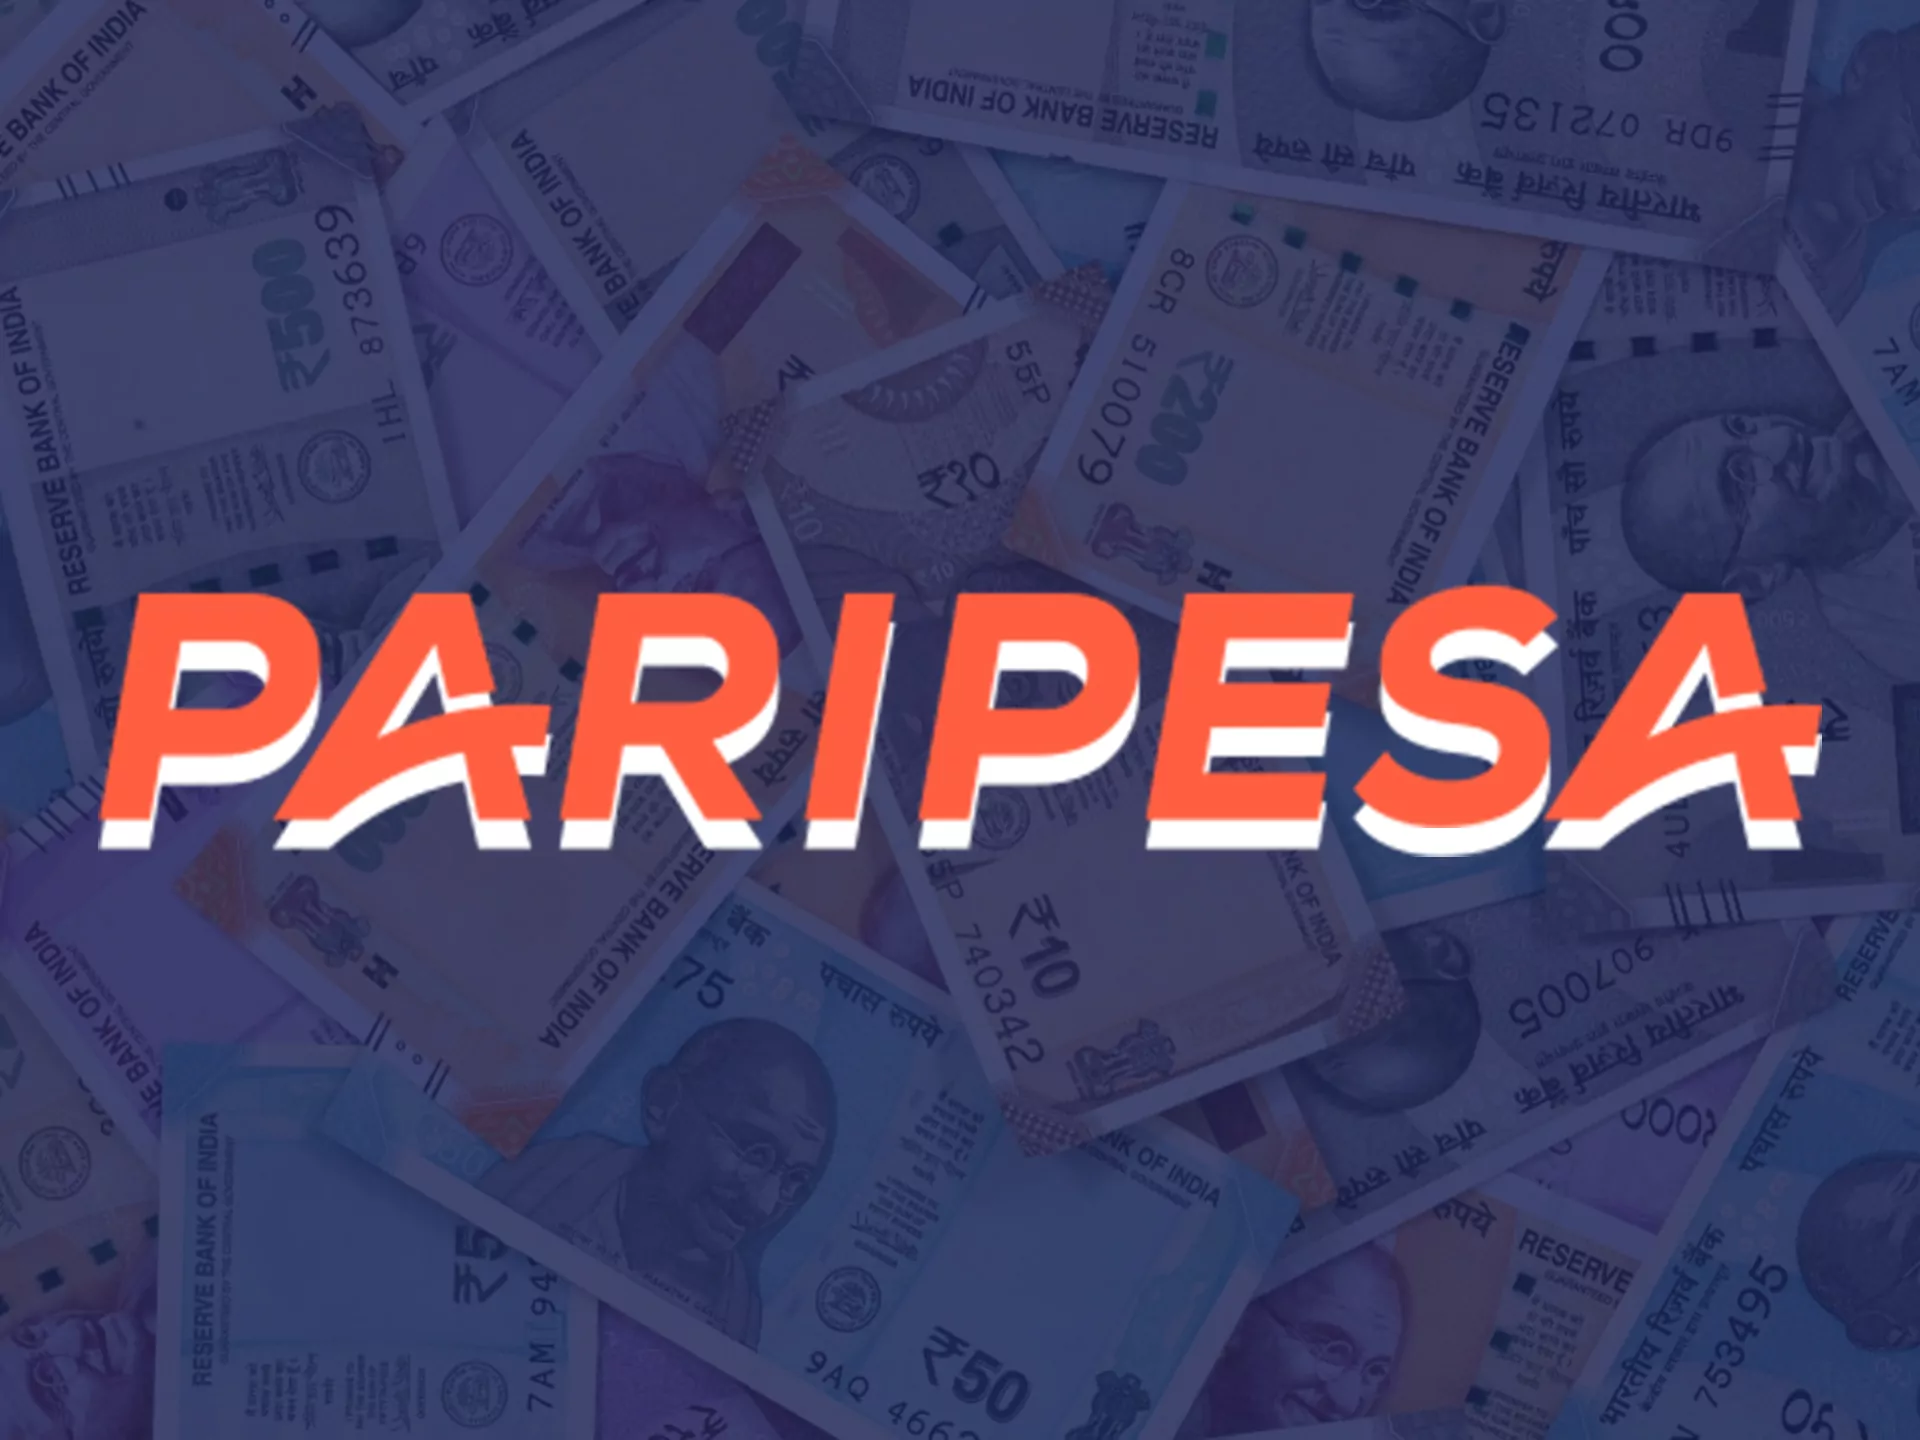 Get big winnings at Paripesa.